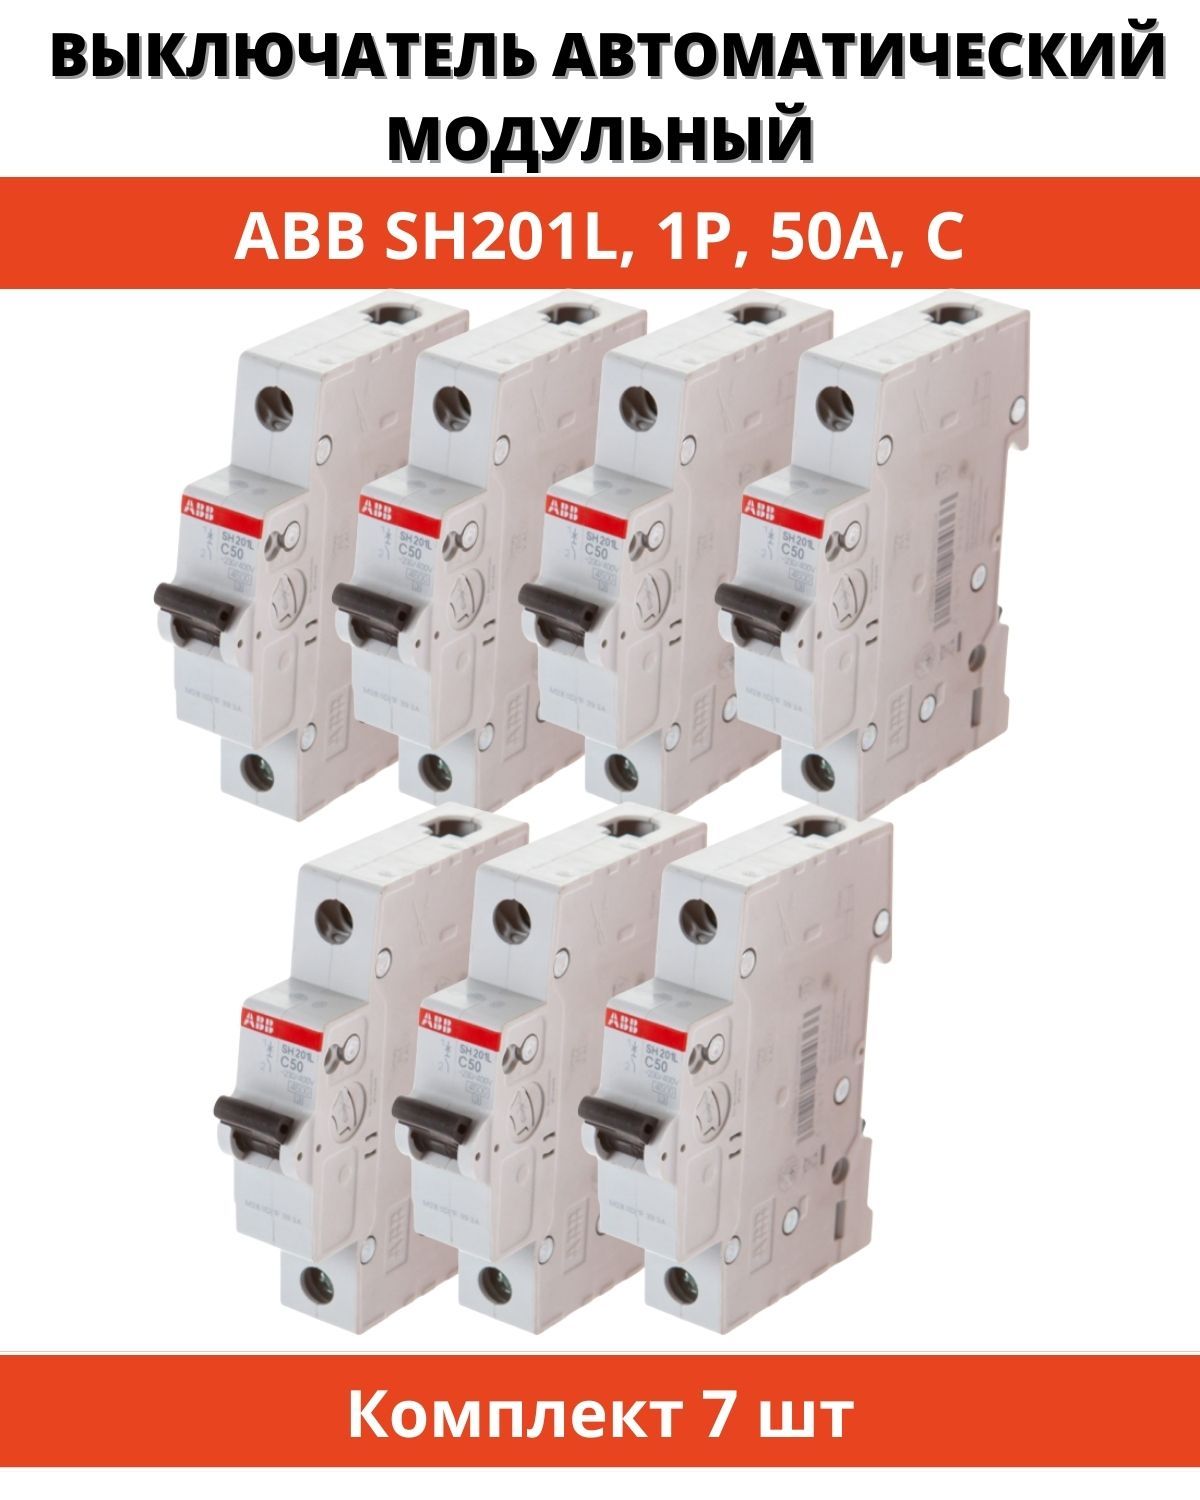 Автоматический выключатель ABB sh201l. АВВ sh201l c10. Автоматический выключатель ABB sh201l c10. Автомат ABB ms116.